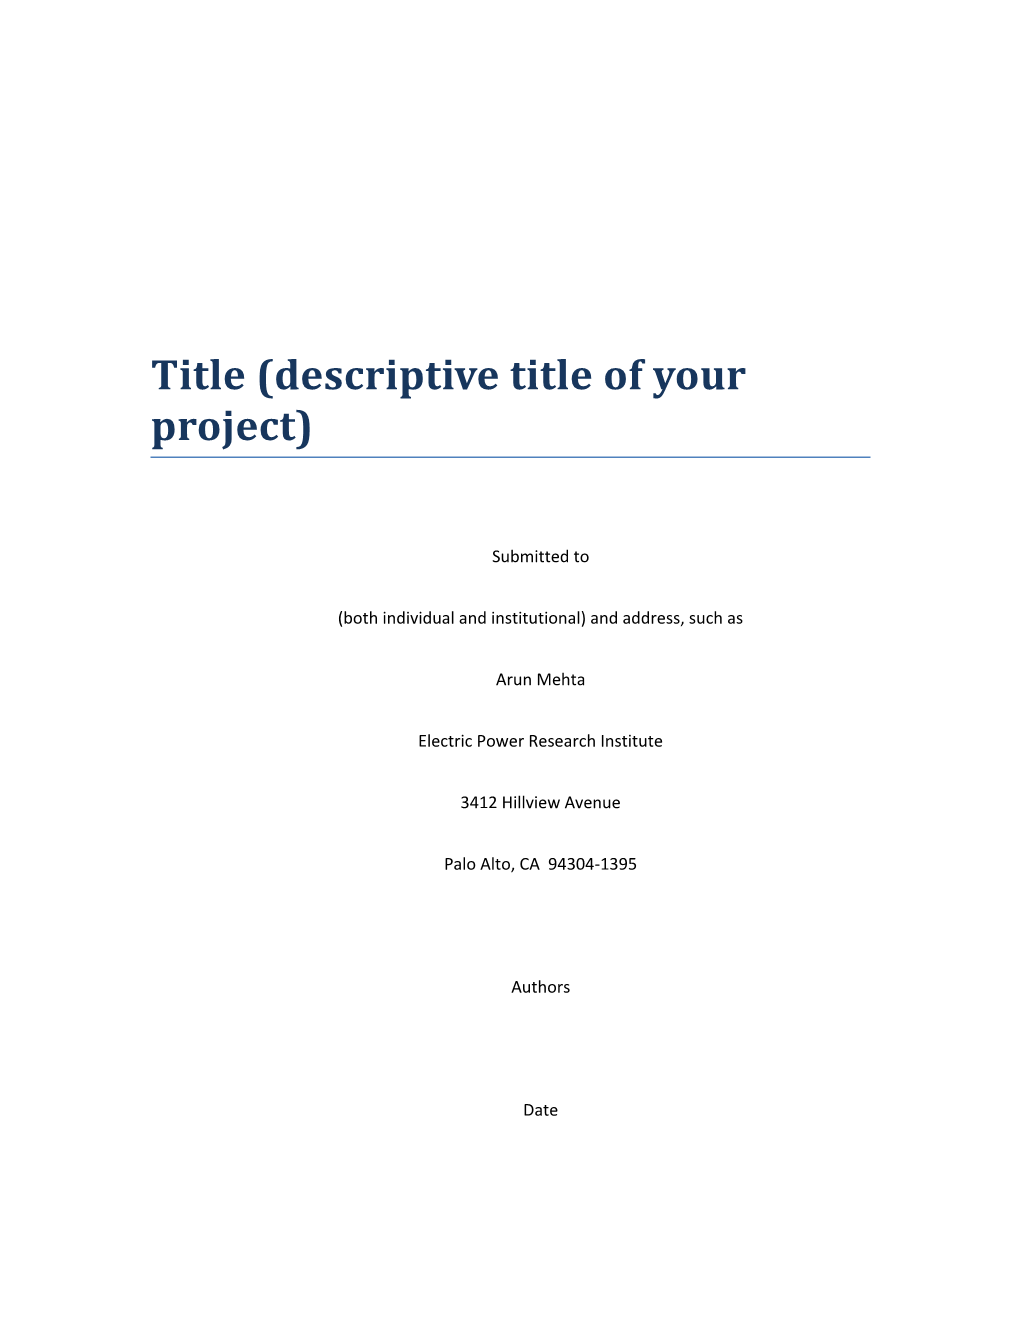 Title (Descriptive Title of Your Project)